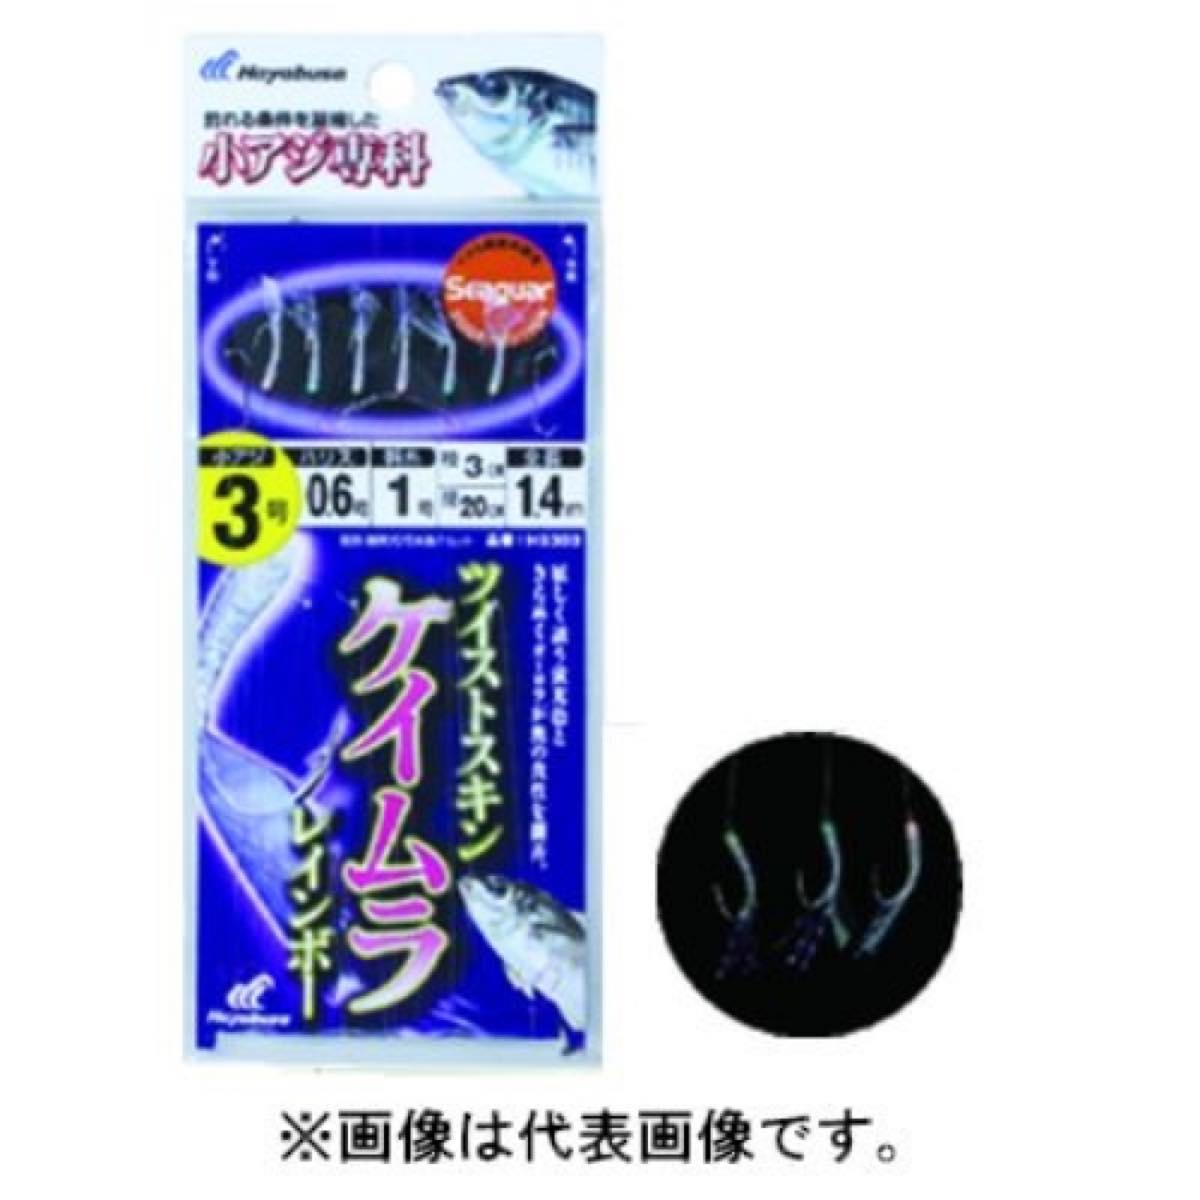 ハヤブサ Hayabusa 小アジ専科 ツイストケイムラレインボー HS303 鈎6号-ハリス1.5号 ネコポス(メール便)対象商品